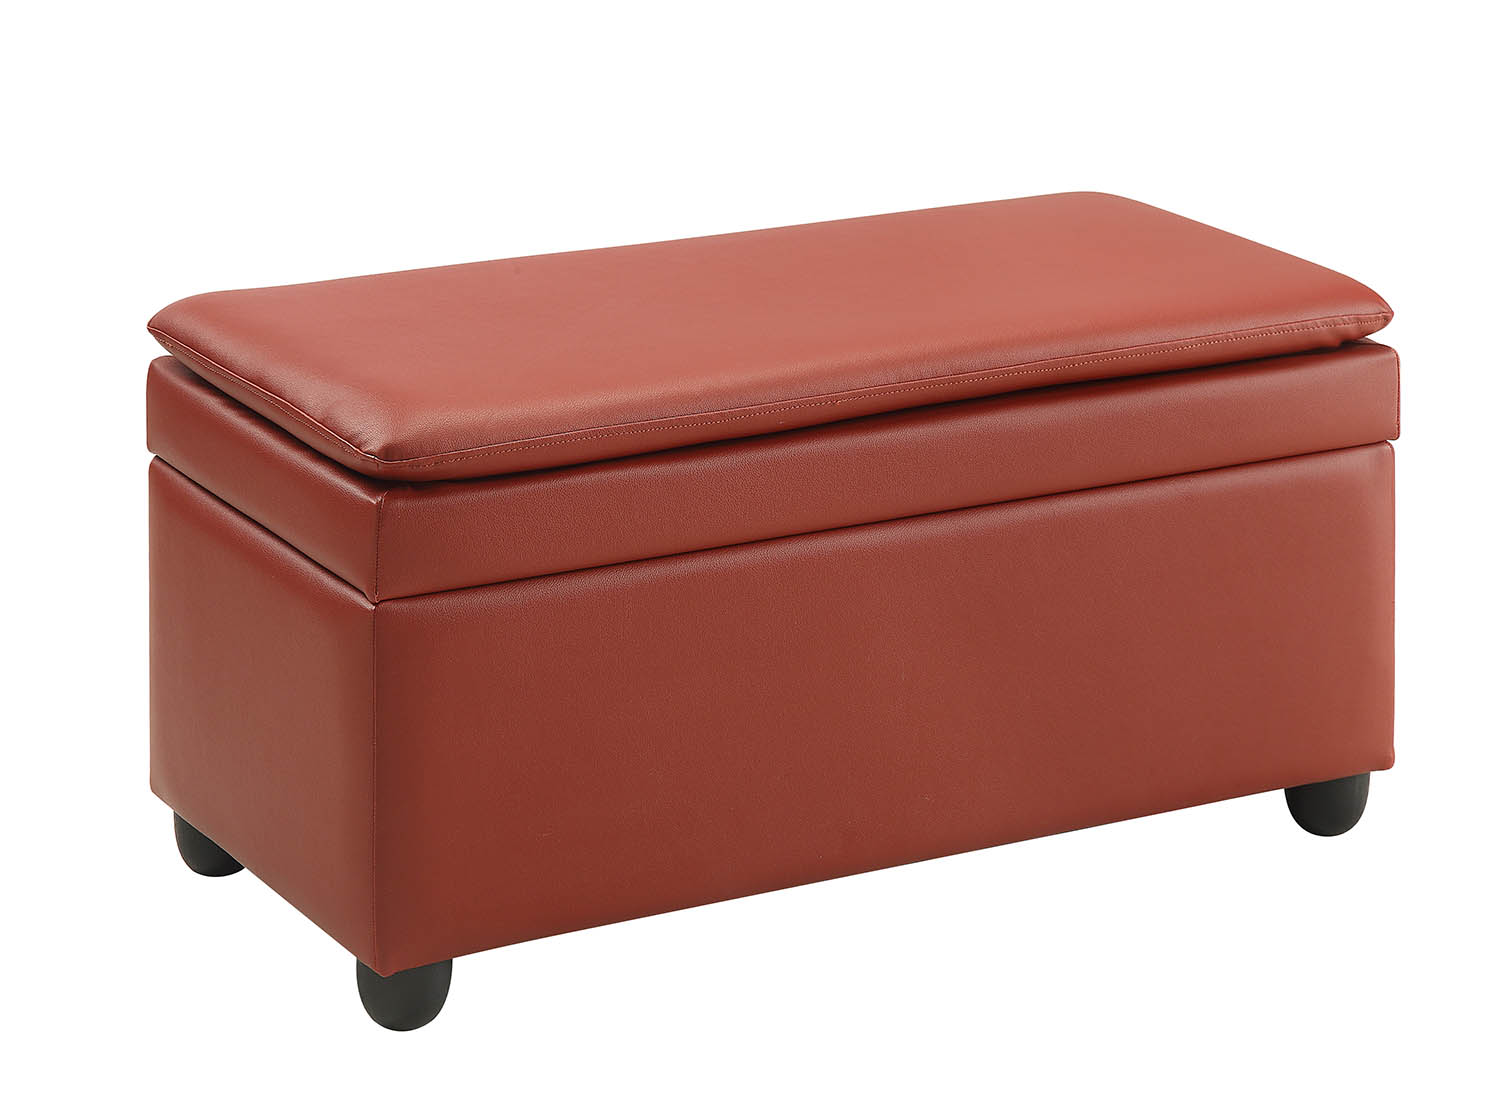 19" X 39" X 20" Wine PU Upholstery Bench w/Storage